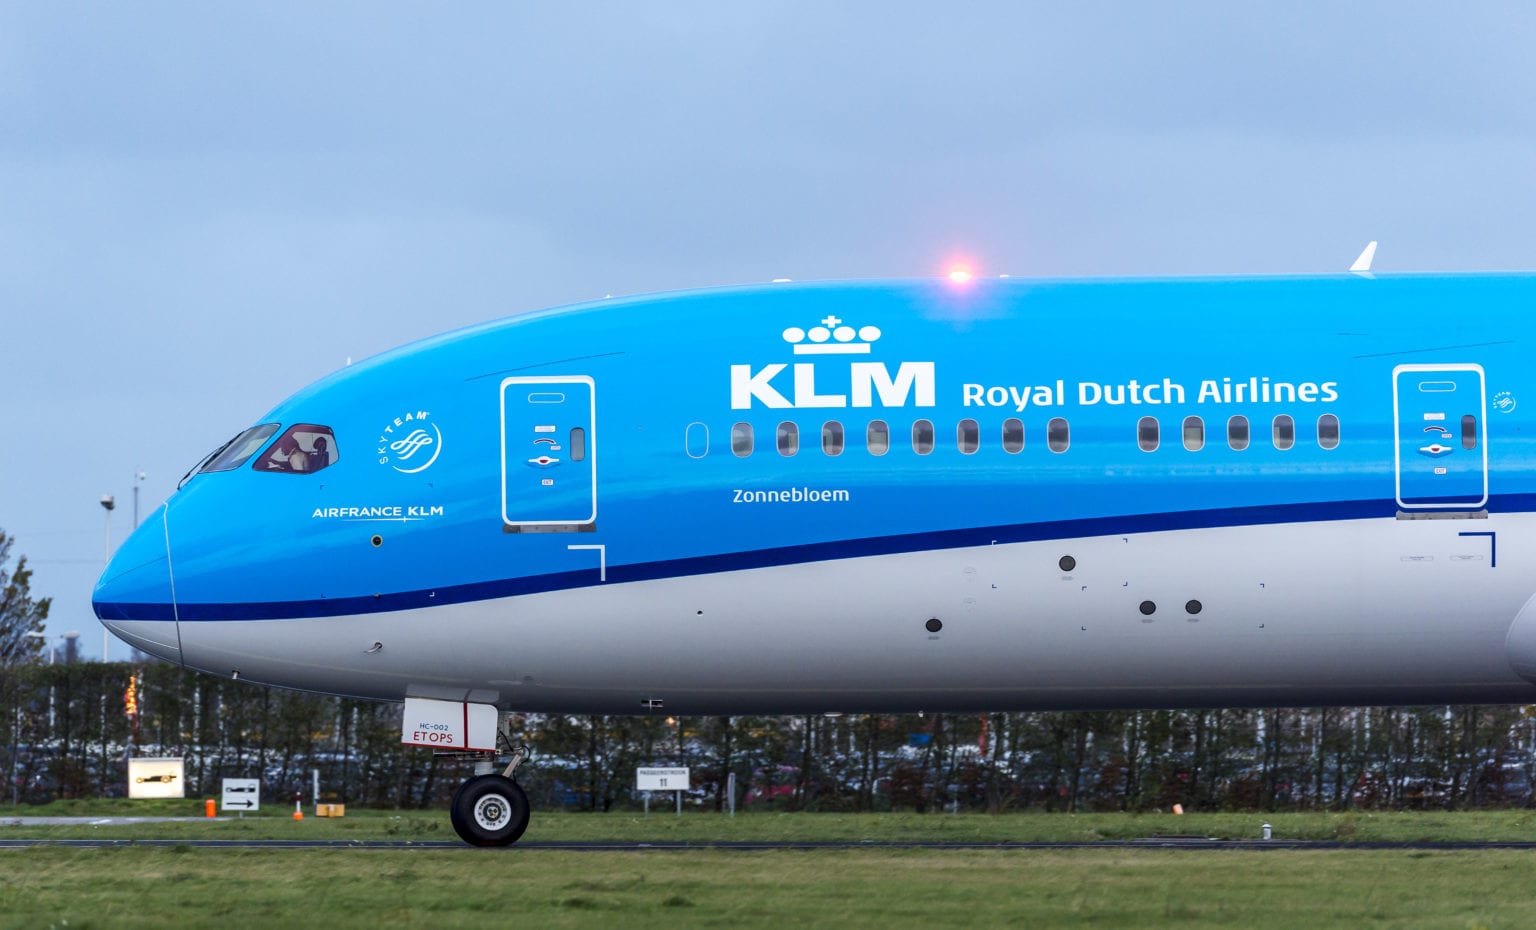 KLM - letadlo